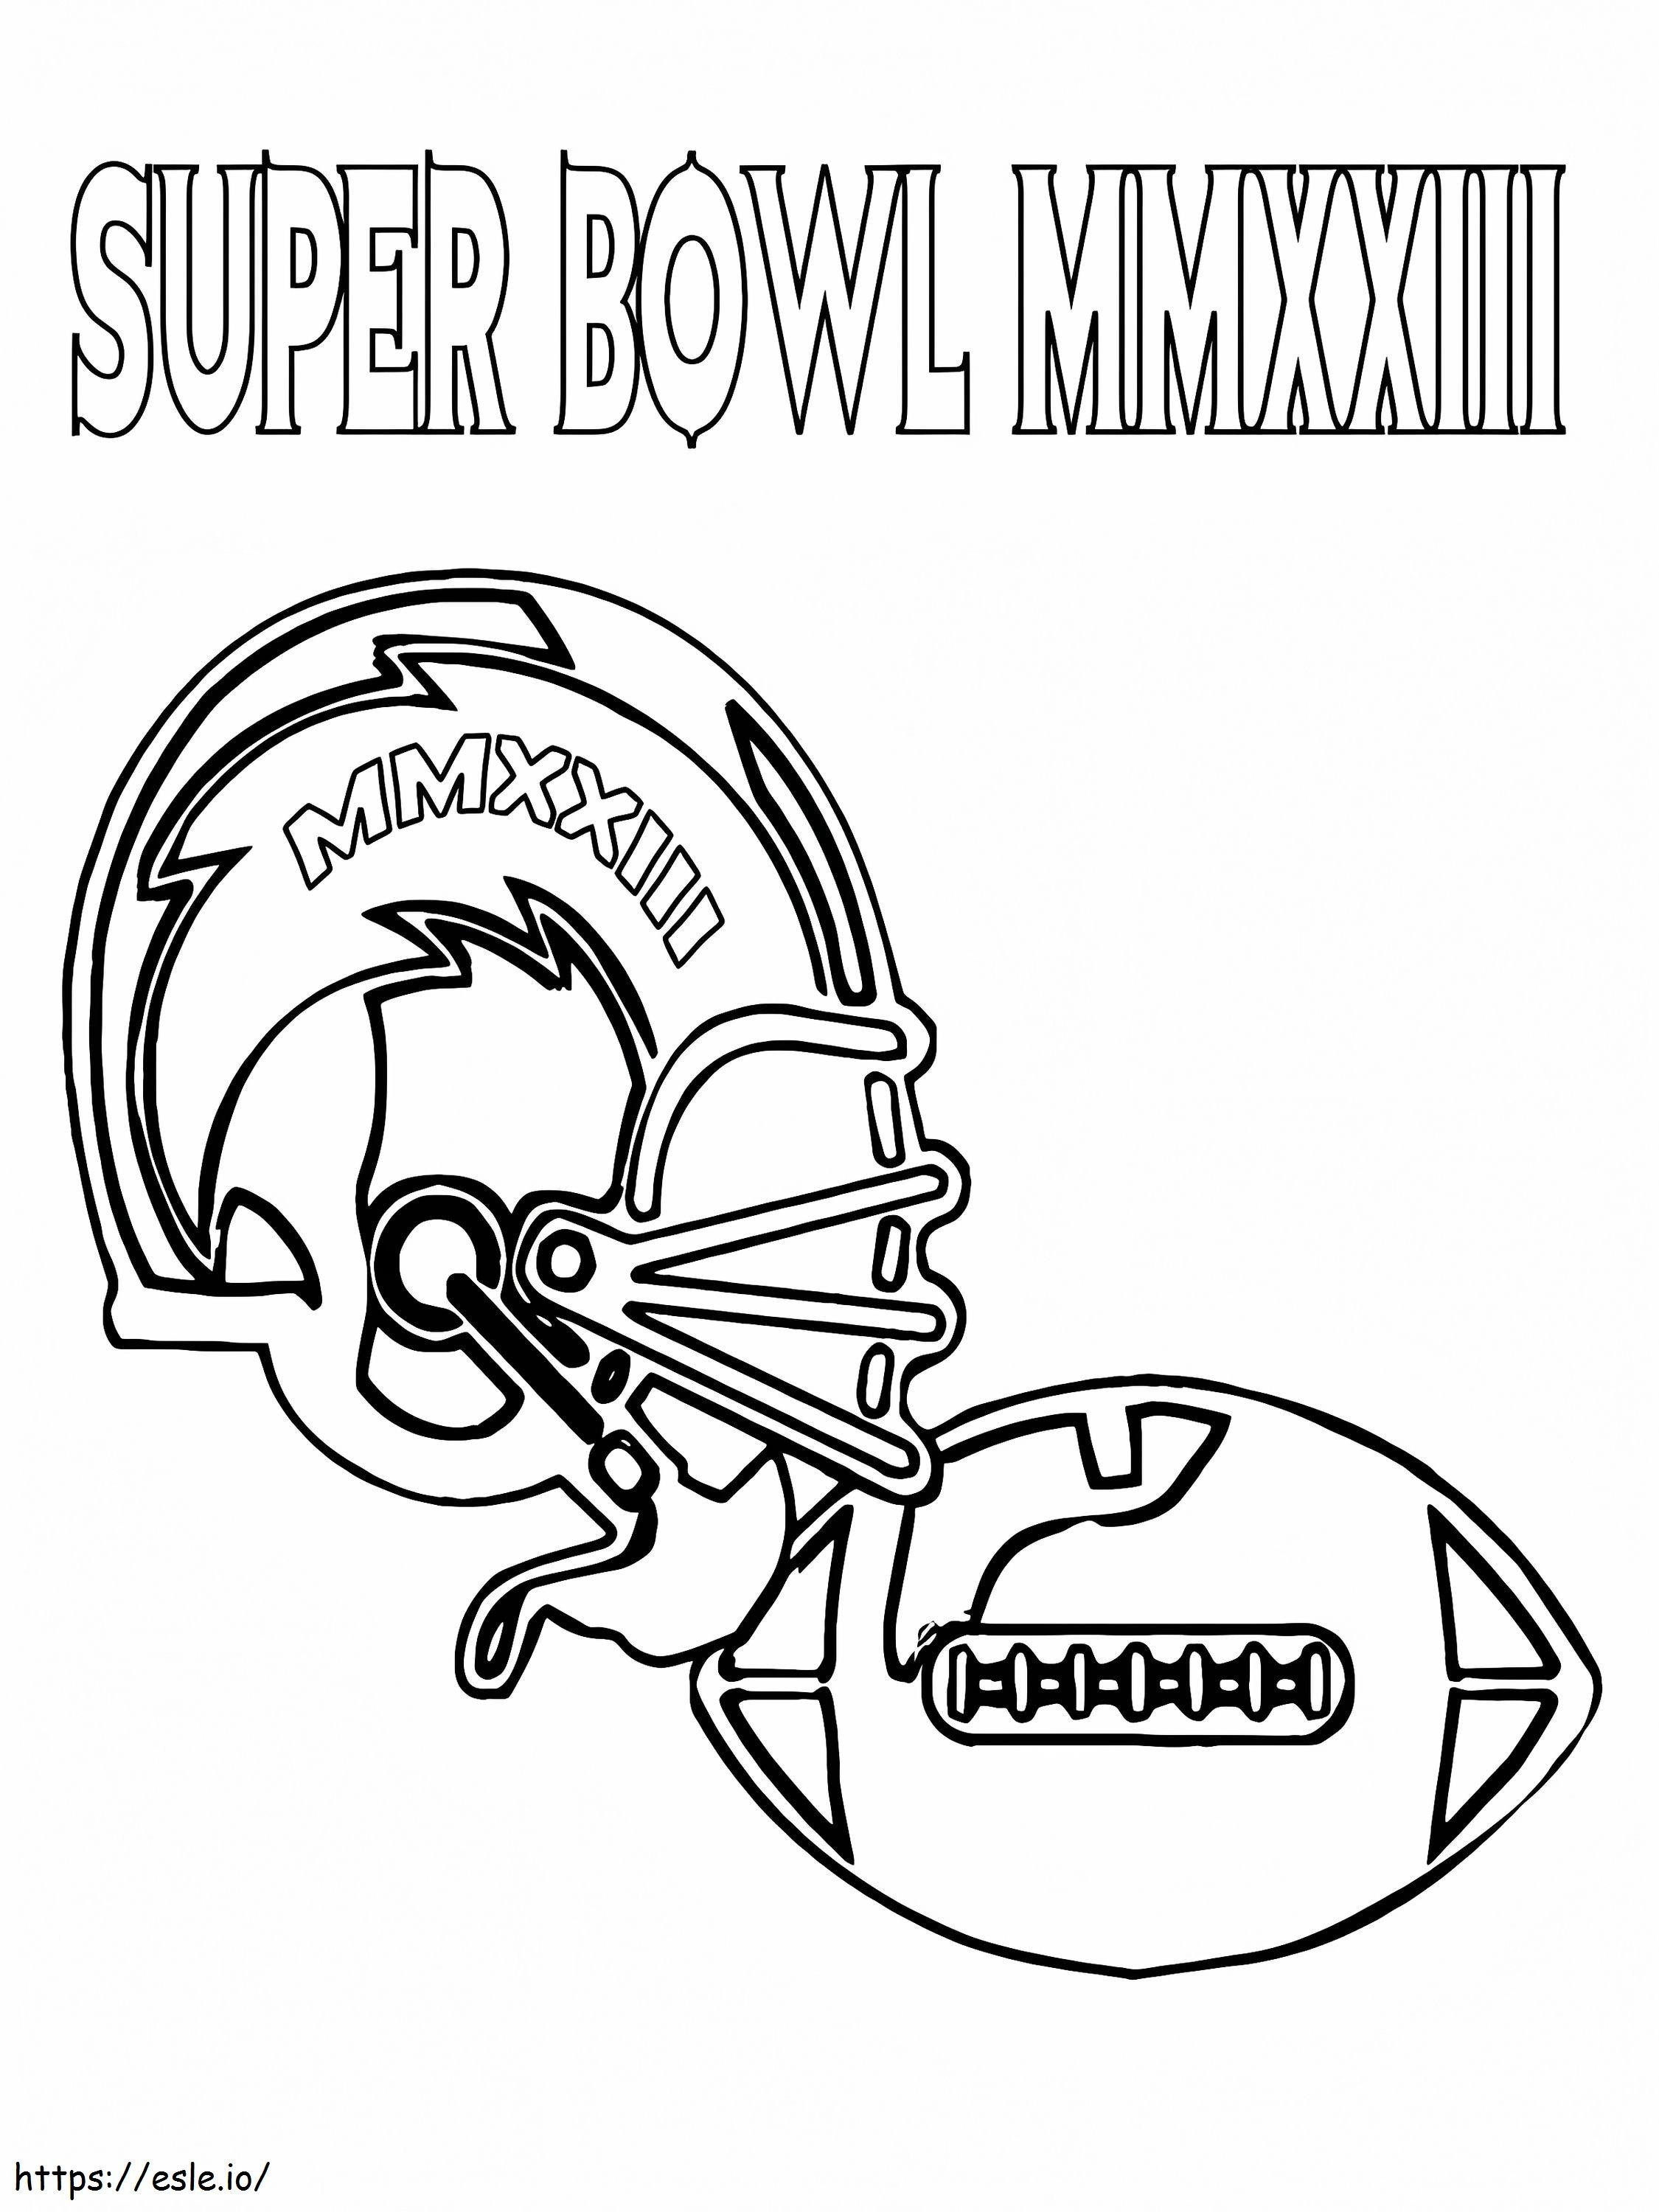 Casco e palla da football del Super Bowl da colorare